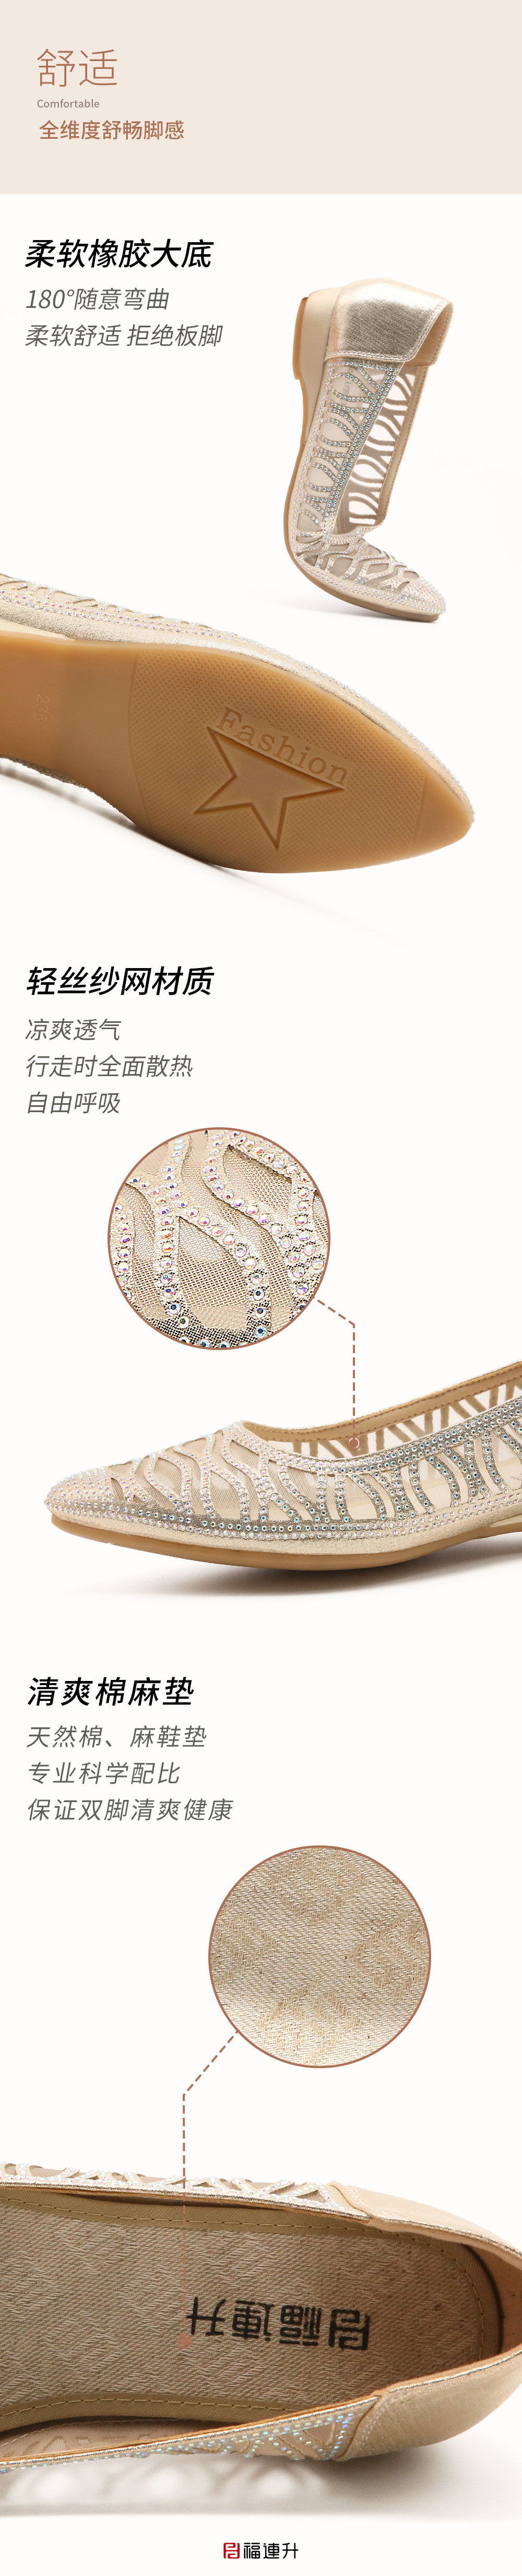 福连升夏时尚透气网孔低跟老北京布鞋女士凉鞋(图3)